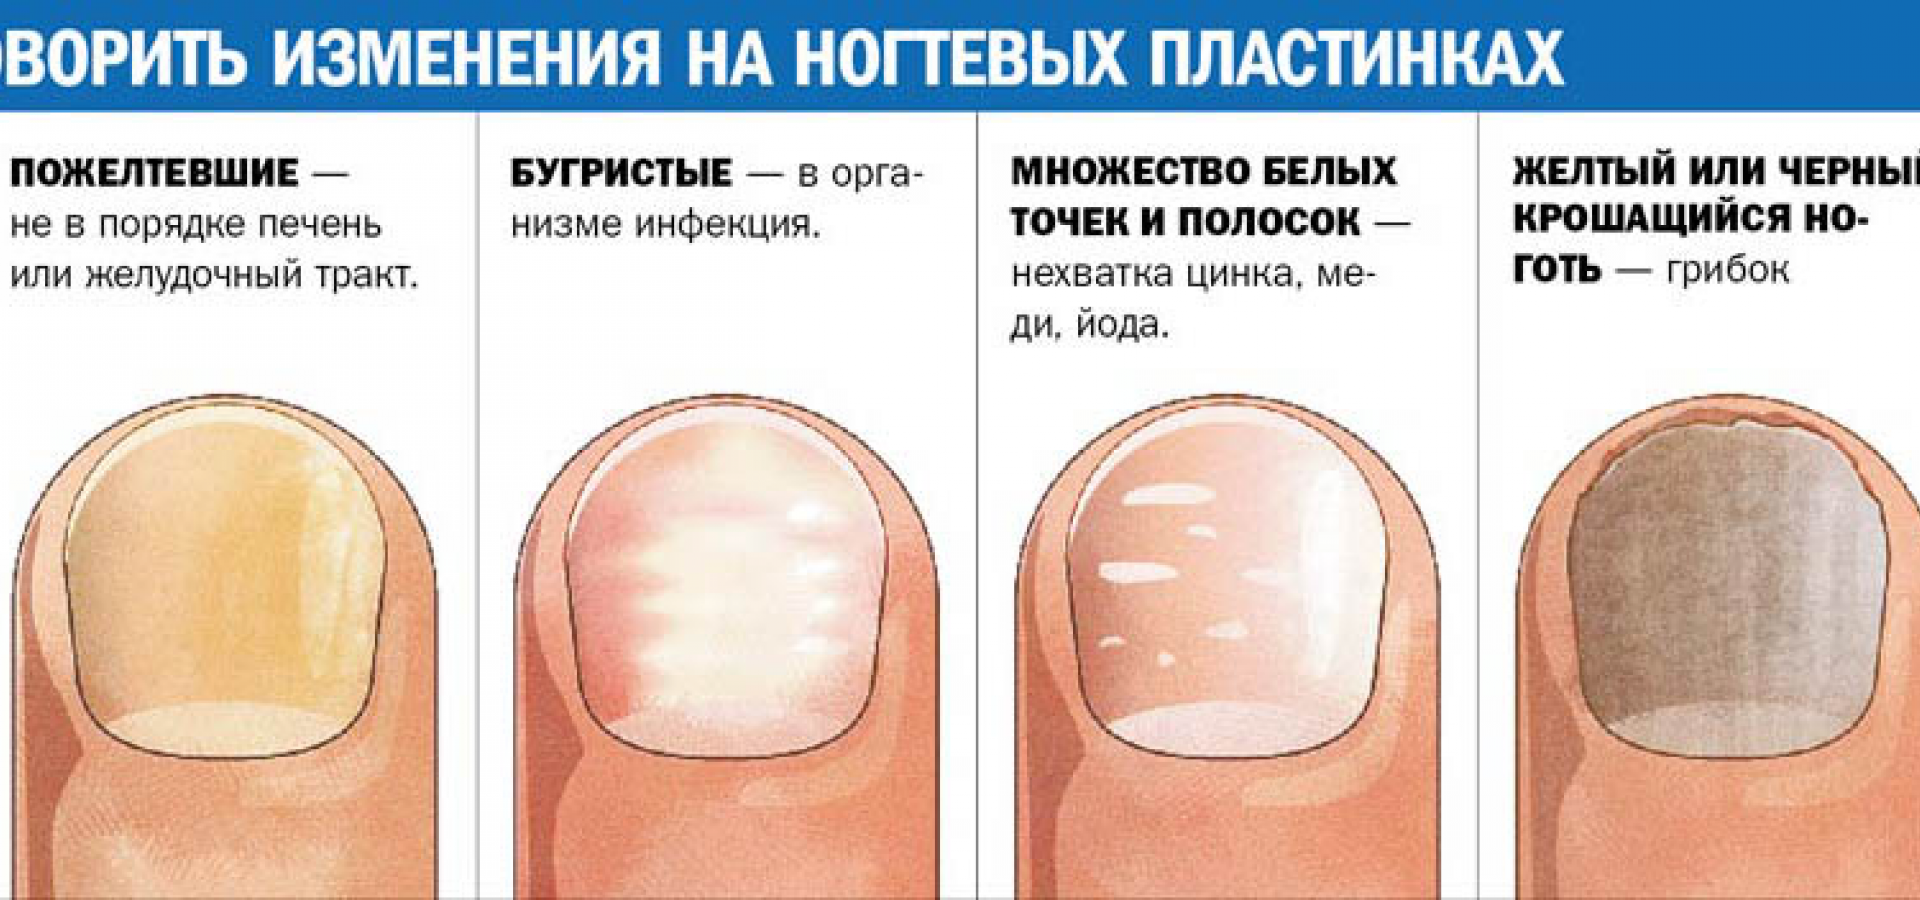 У ребенка слоятся ногти на руках: возможные причины, симптомы, лечение